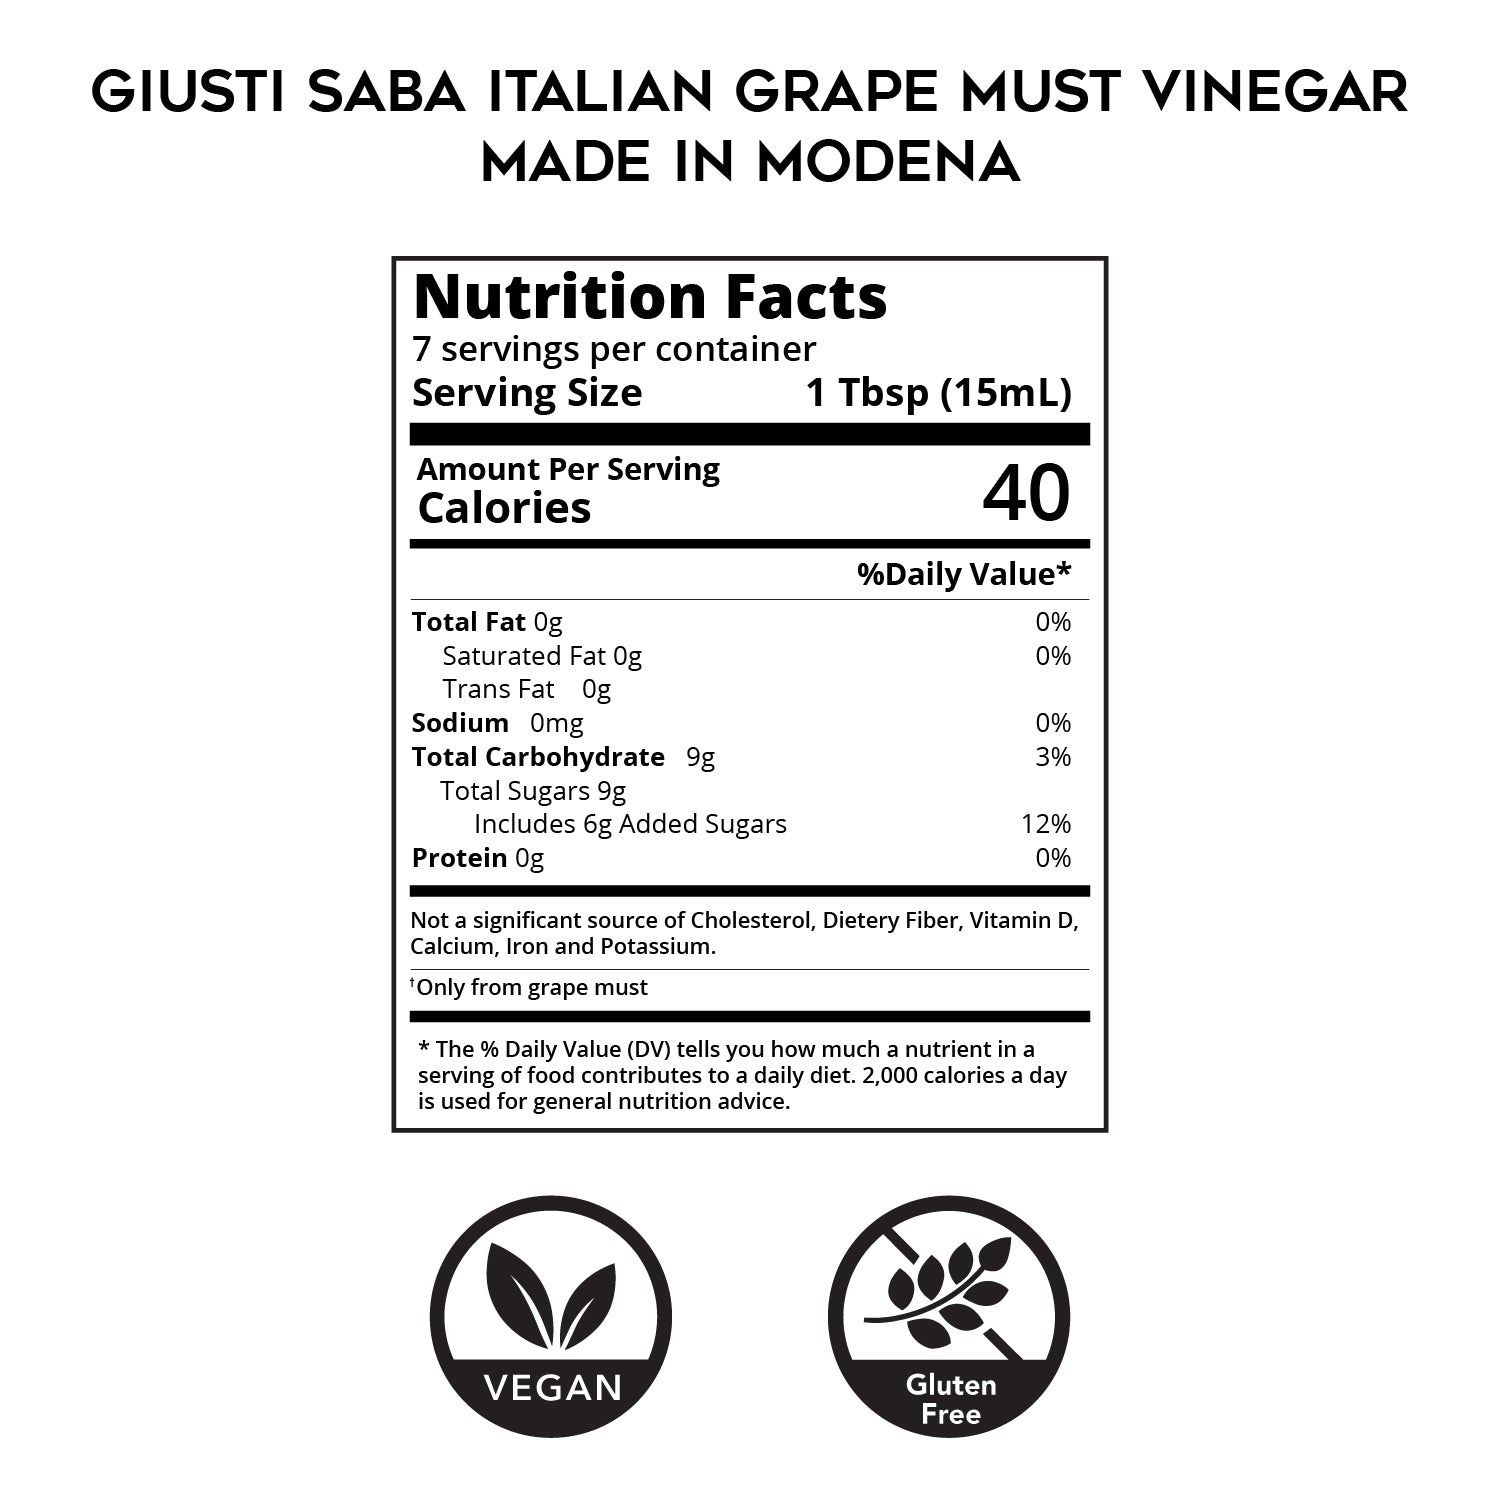 Saba (Italian Grape Must Vinegar) Made in Modena by Giusti